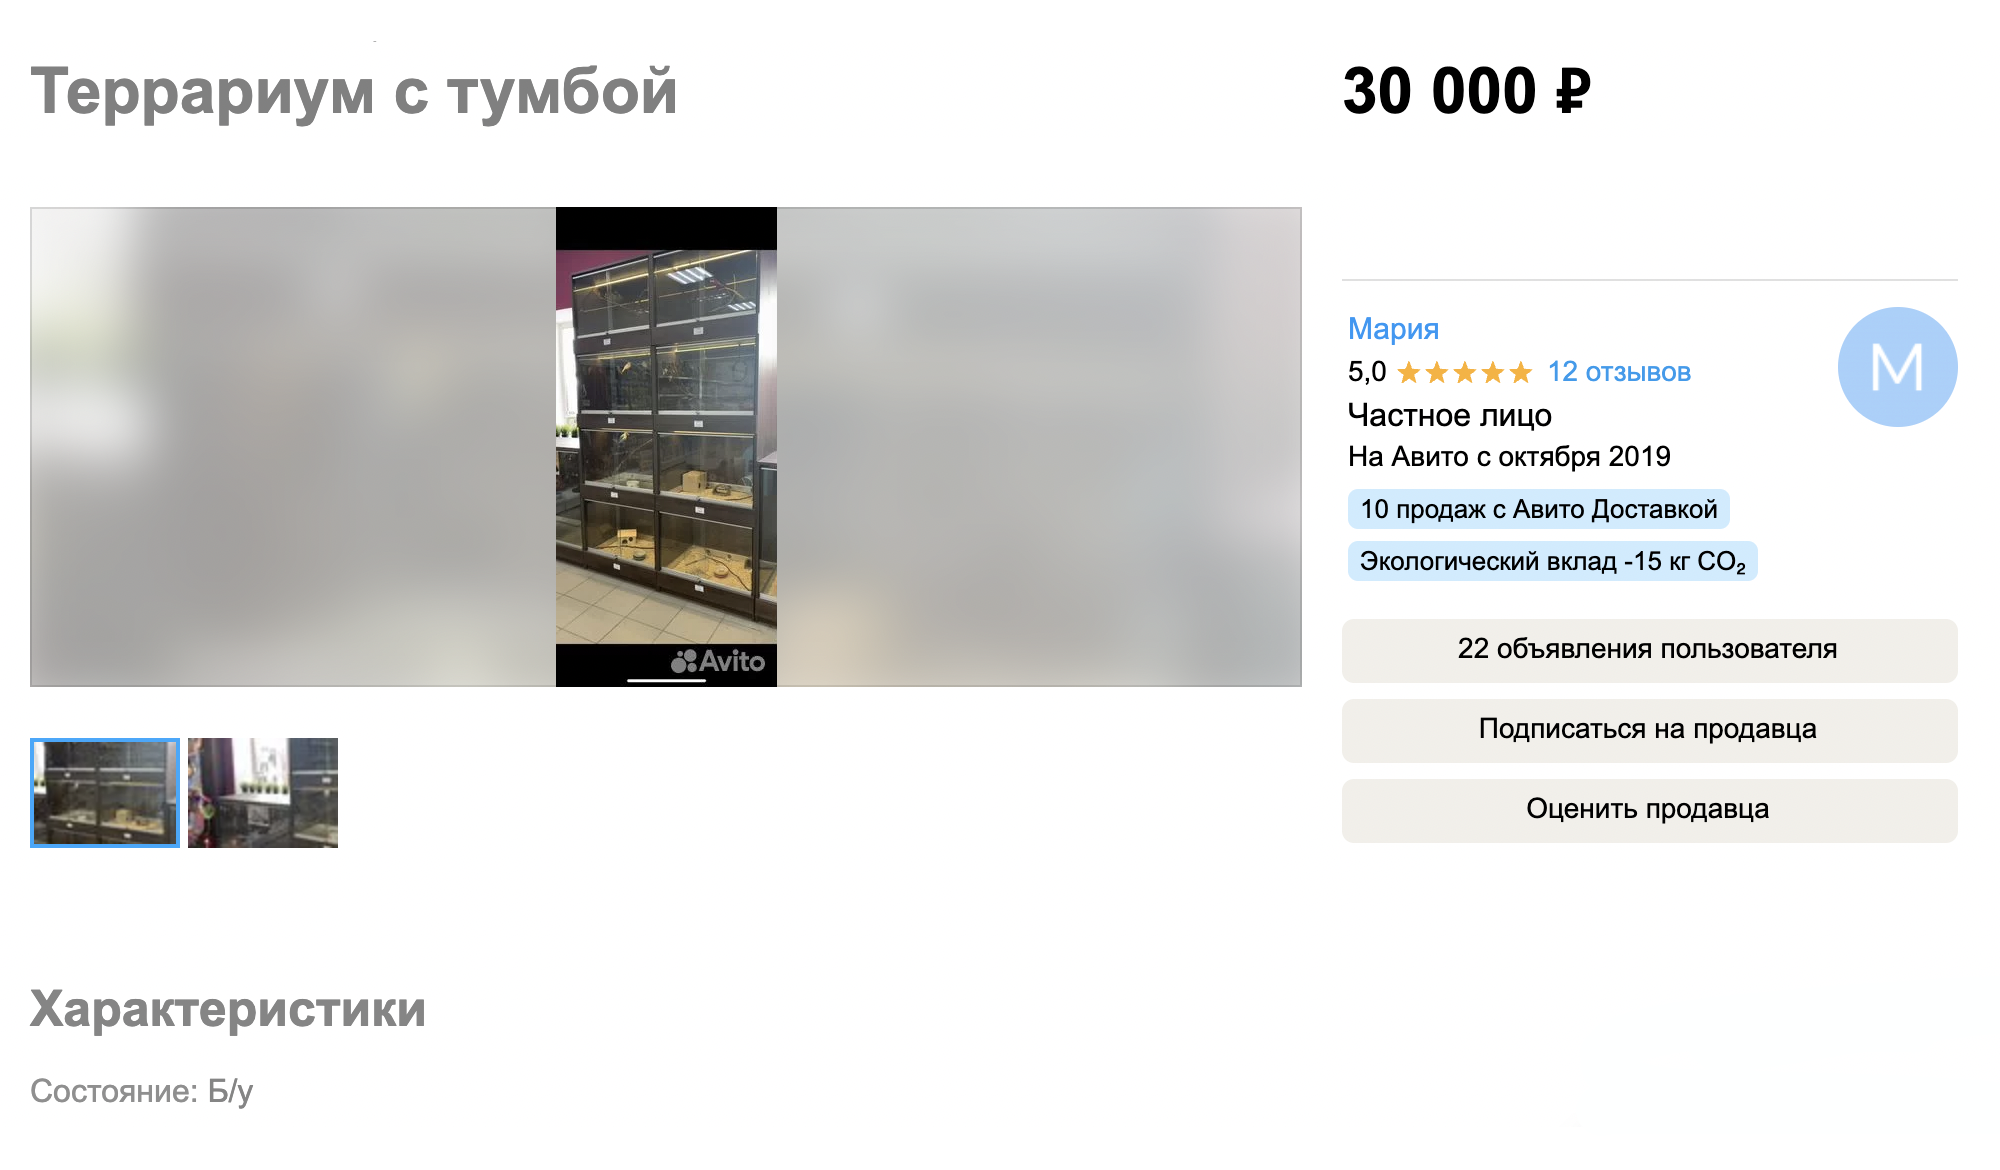 На заказ также возможно изготовить специальную вертикальную стойку с помещениями для разных змей. Конструкция похожа на шкафчик и может стоить до 150 000 ₽. Такие обычно используют профессиональные заводчики, у которых много особей на продажу. Источник: avito.ru